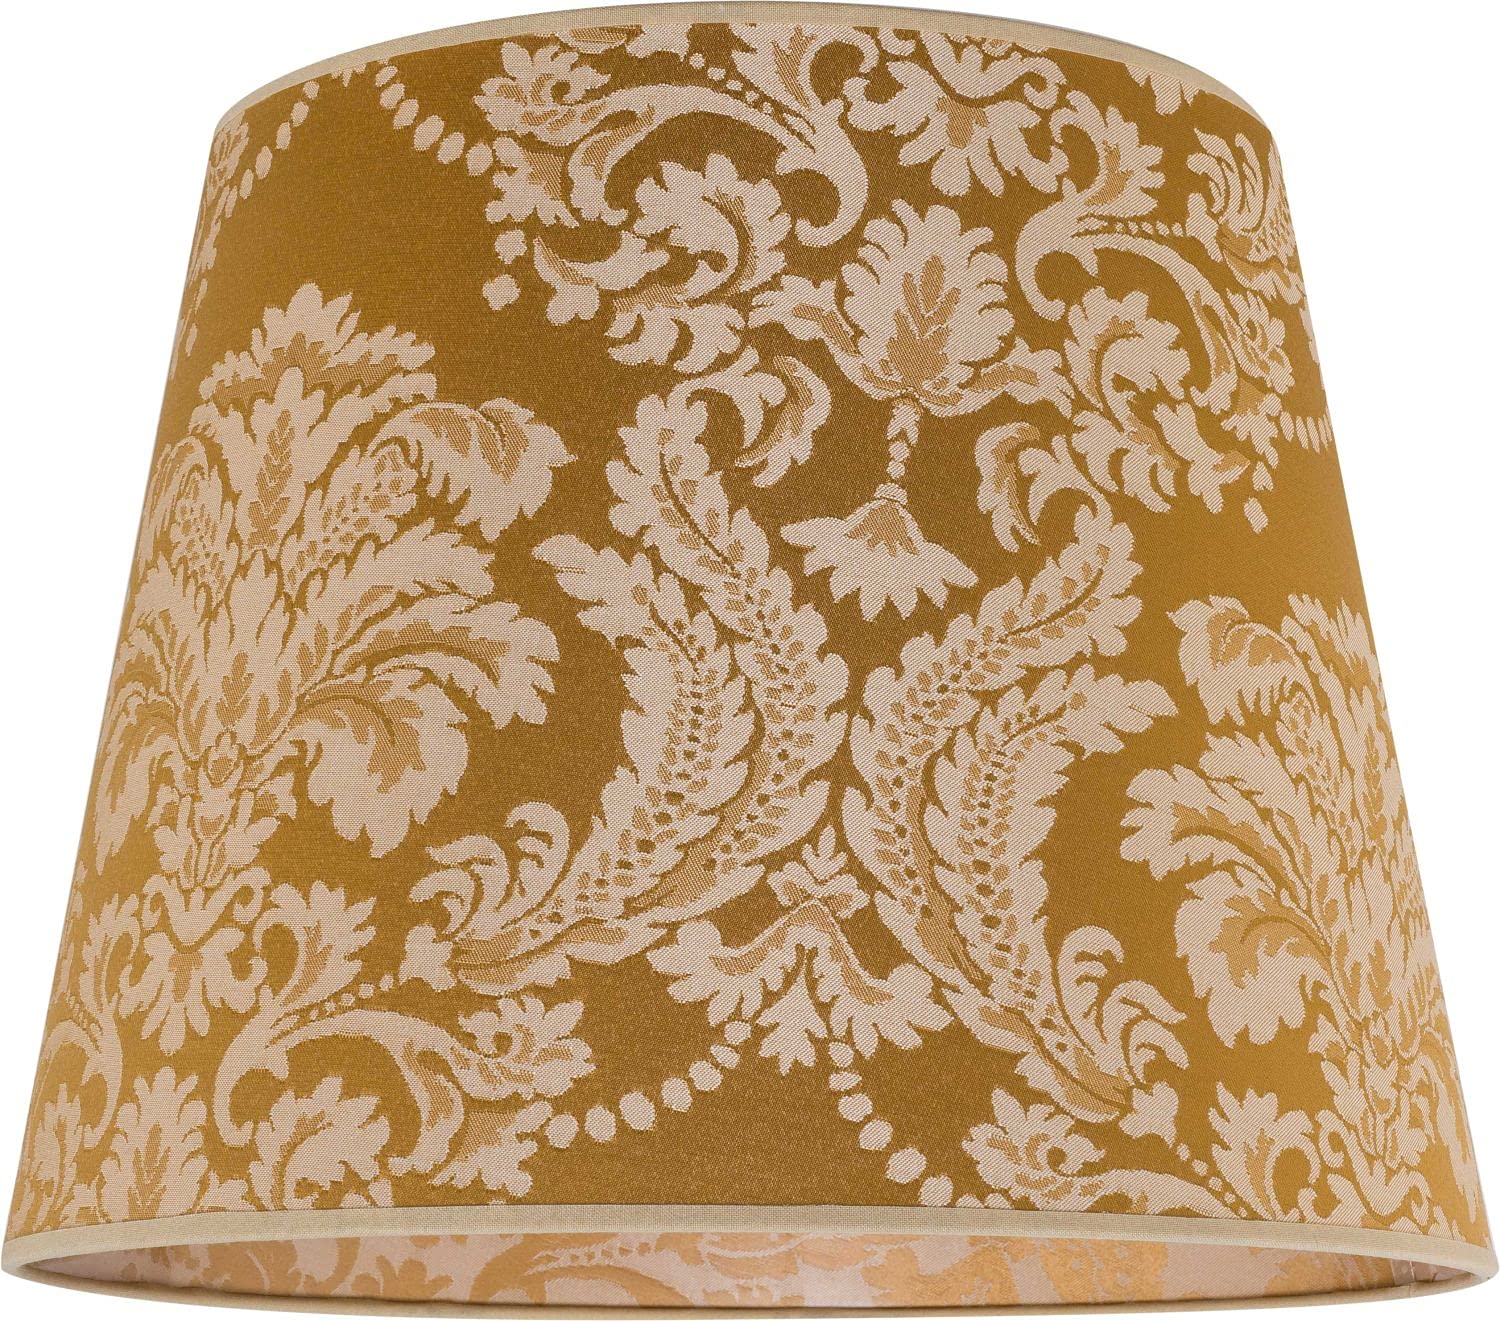 Konischer Stoff Lampenschirm Gold Barock Design Hängelampe E27 Textil Schirm Pendelleuchte